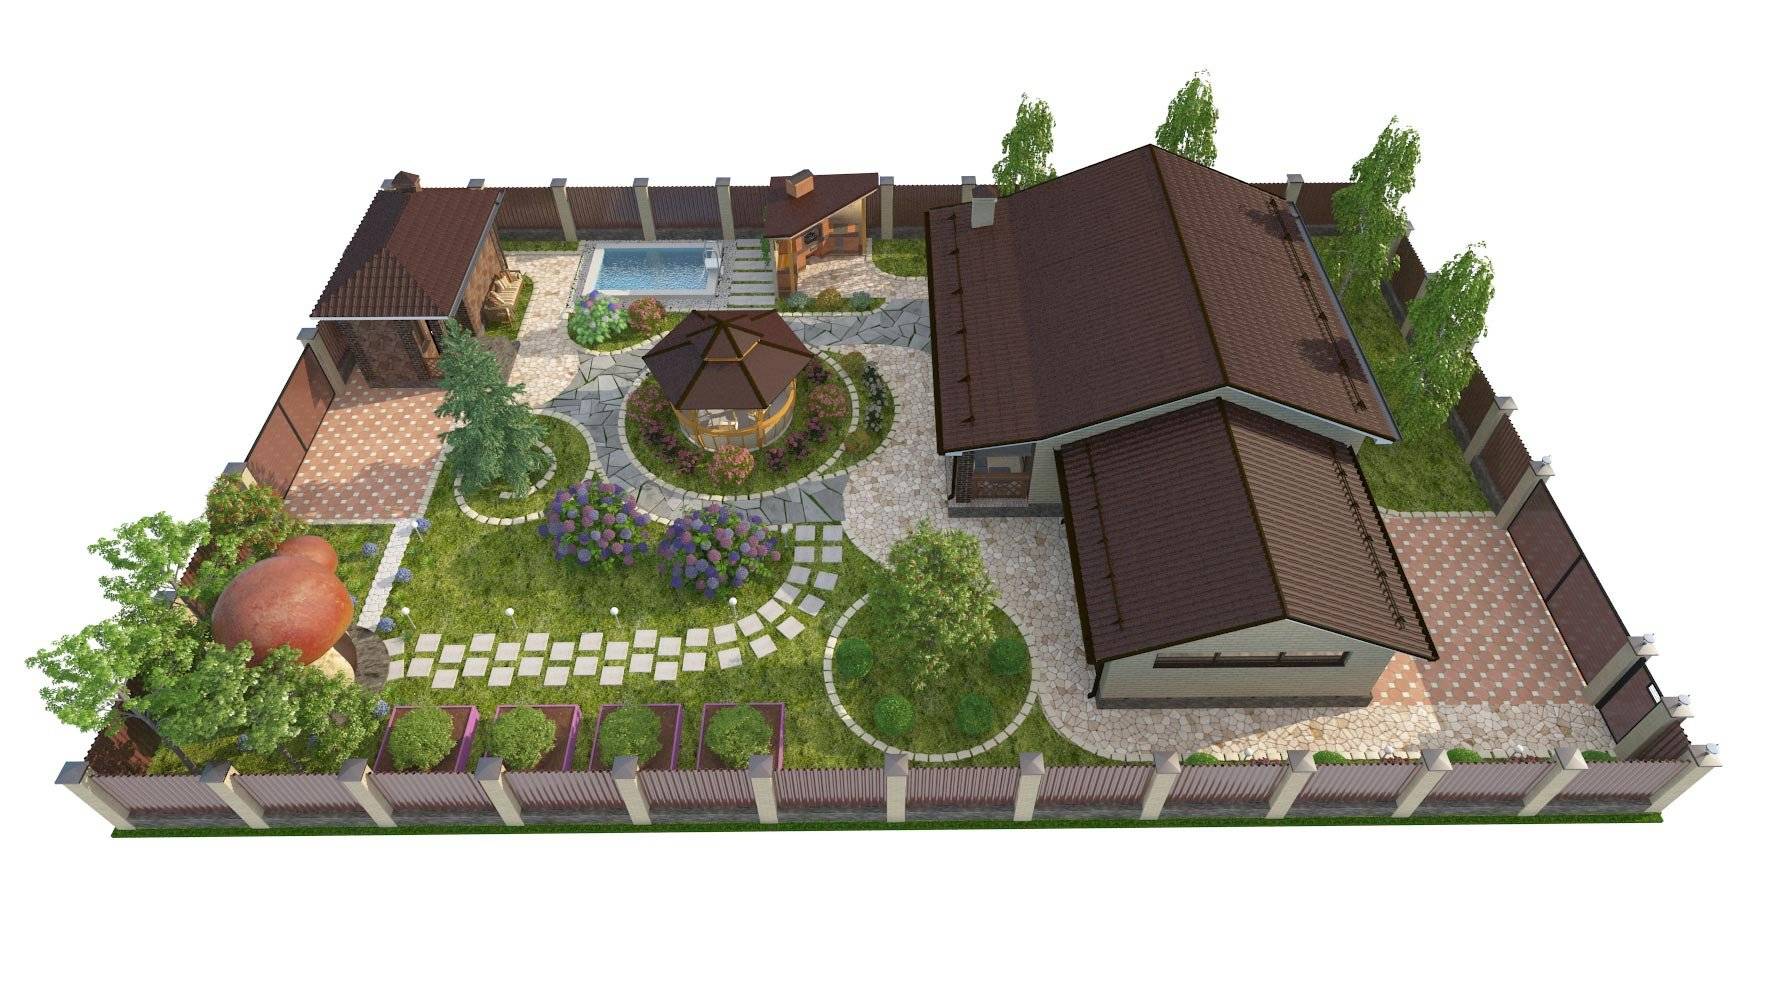 Ландшафтный дизайн дачного участка 5 соток: оформление двора загородного дома своими руками, фото и примеры декора прямоугольной территории с огородом